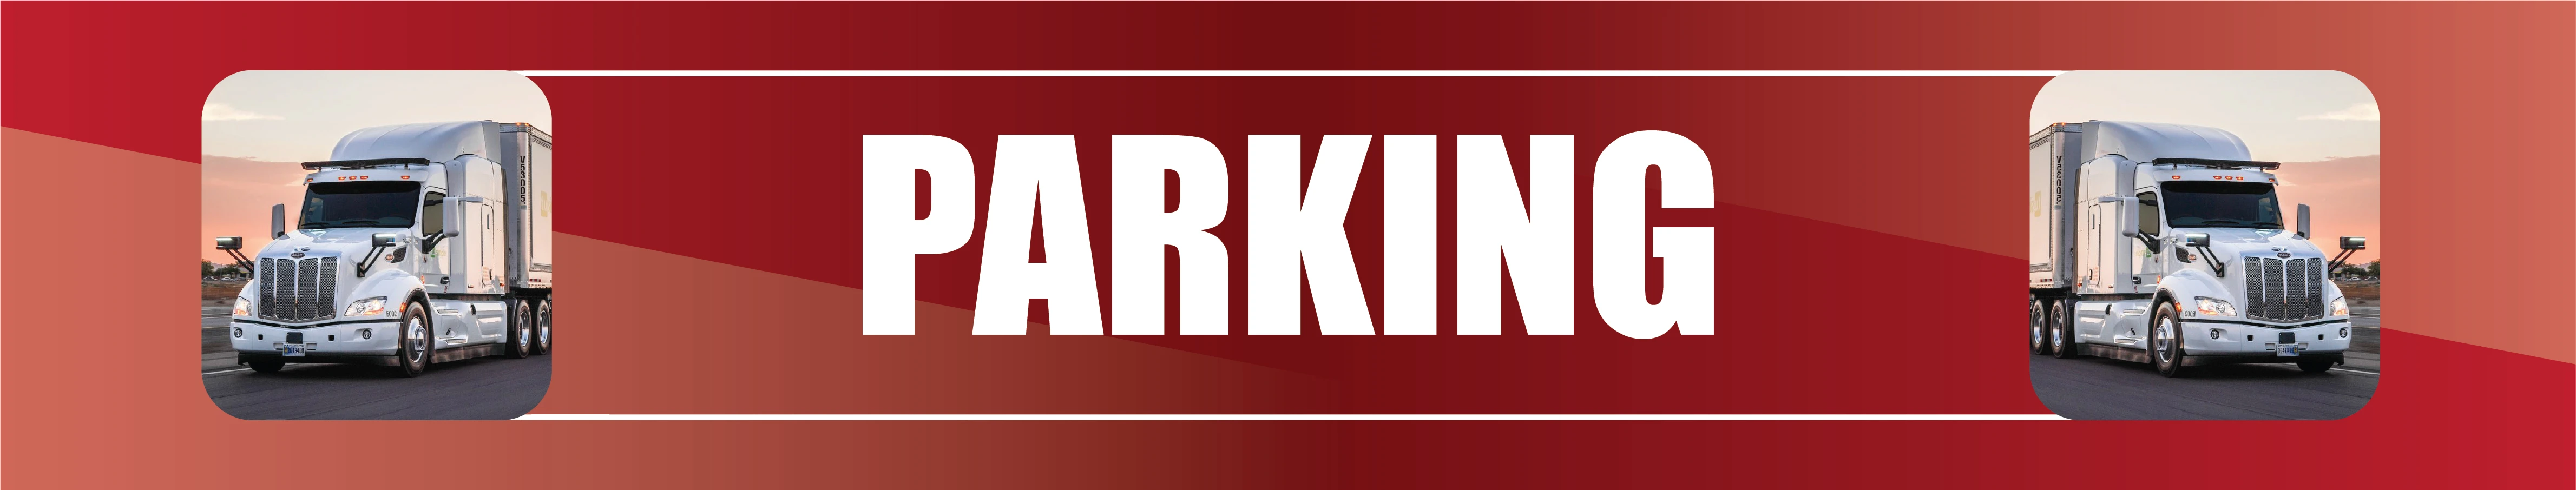 1178-parking-eng-17008187014883.jpg